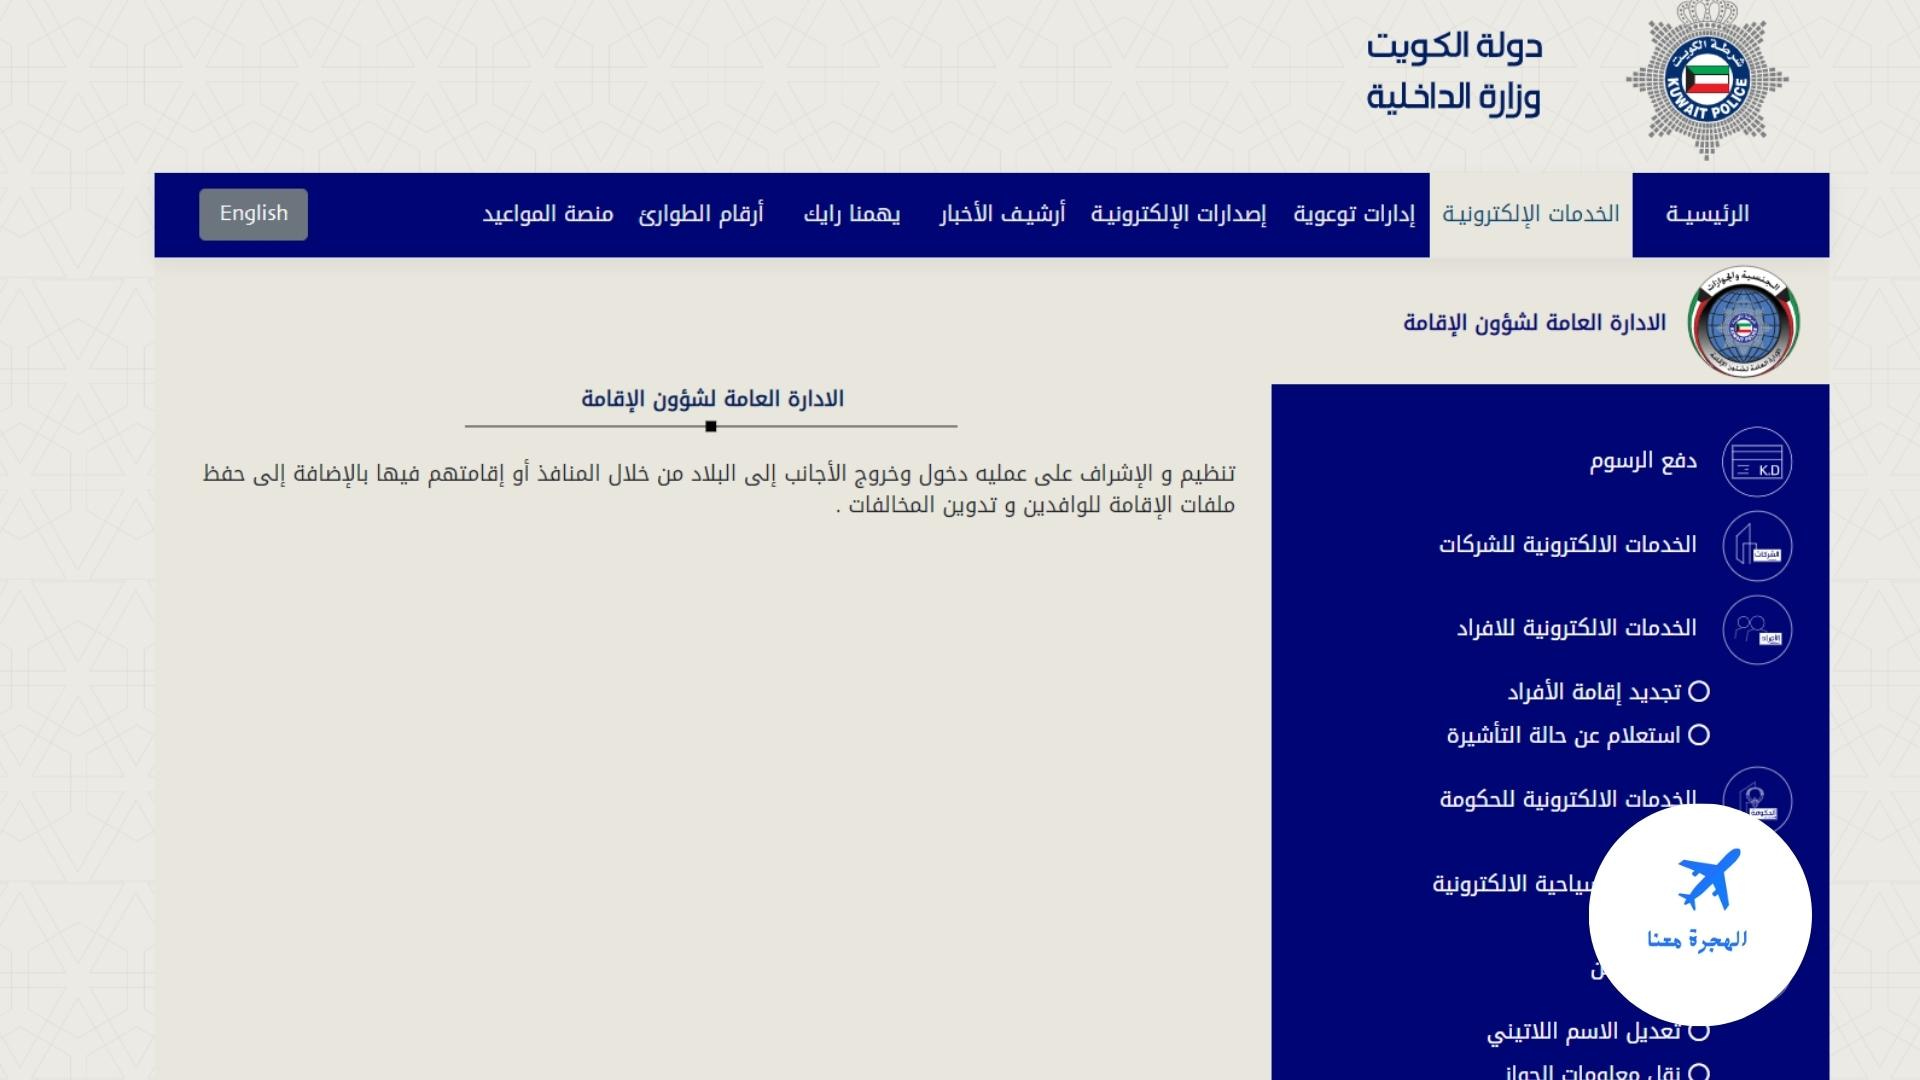 الاستعلام عن صدور الإقامة بالرقم المدني الكويت عبر الانترنت الهجرة معنا